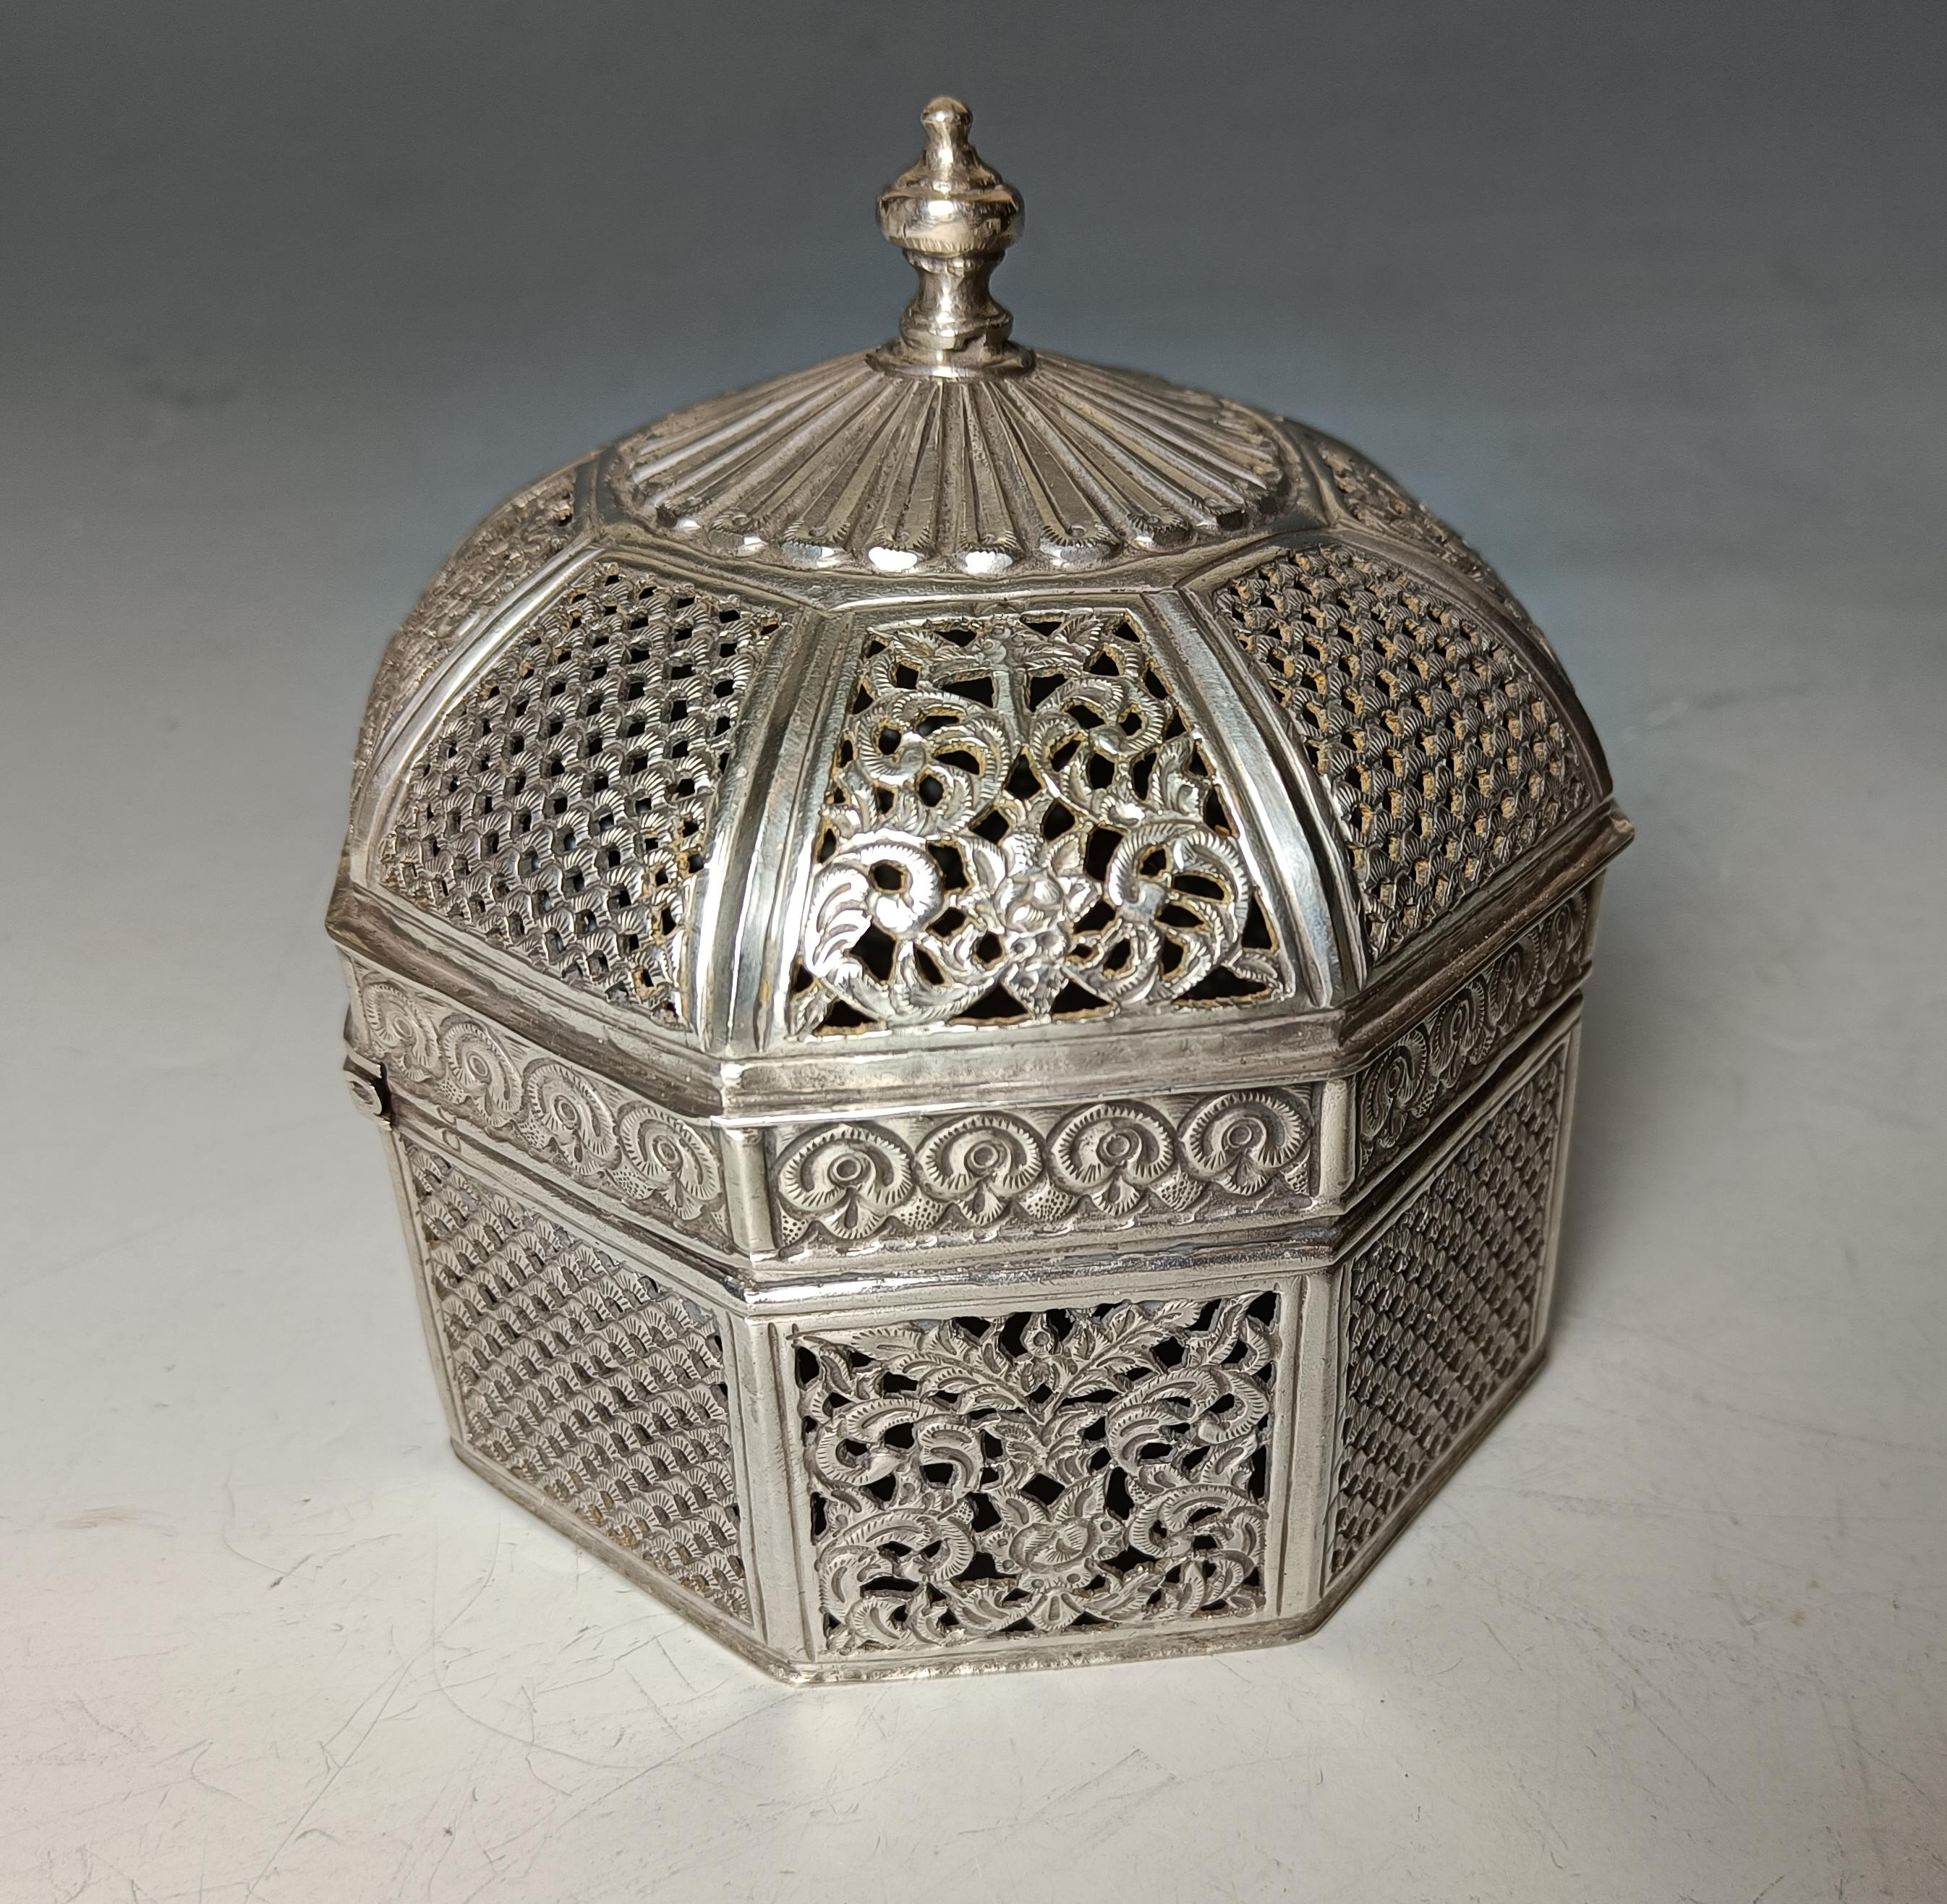 Hervorragende große indische Mughal-Stil repoussé und durchbrochene Silber-Box.
Ein schönes Achteck  Silberne Dose mit gewölbtem Deckel mit durchbrochener  florales Muster und feines geometrisches Repoussieren, geprägt und ziseliert  die Verzierung